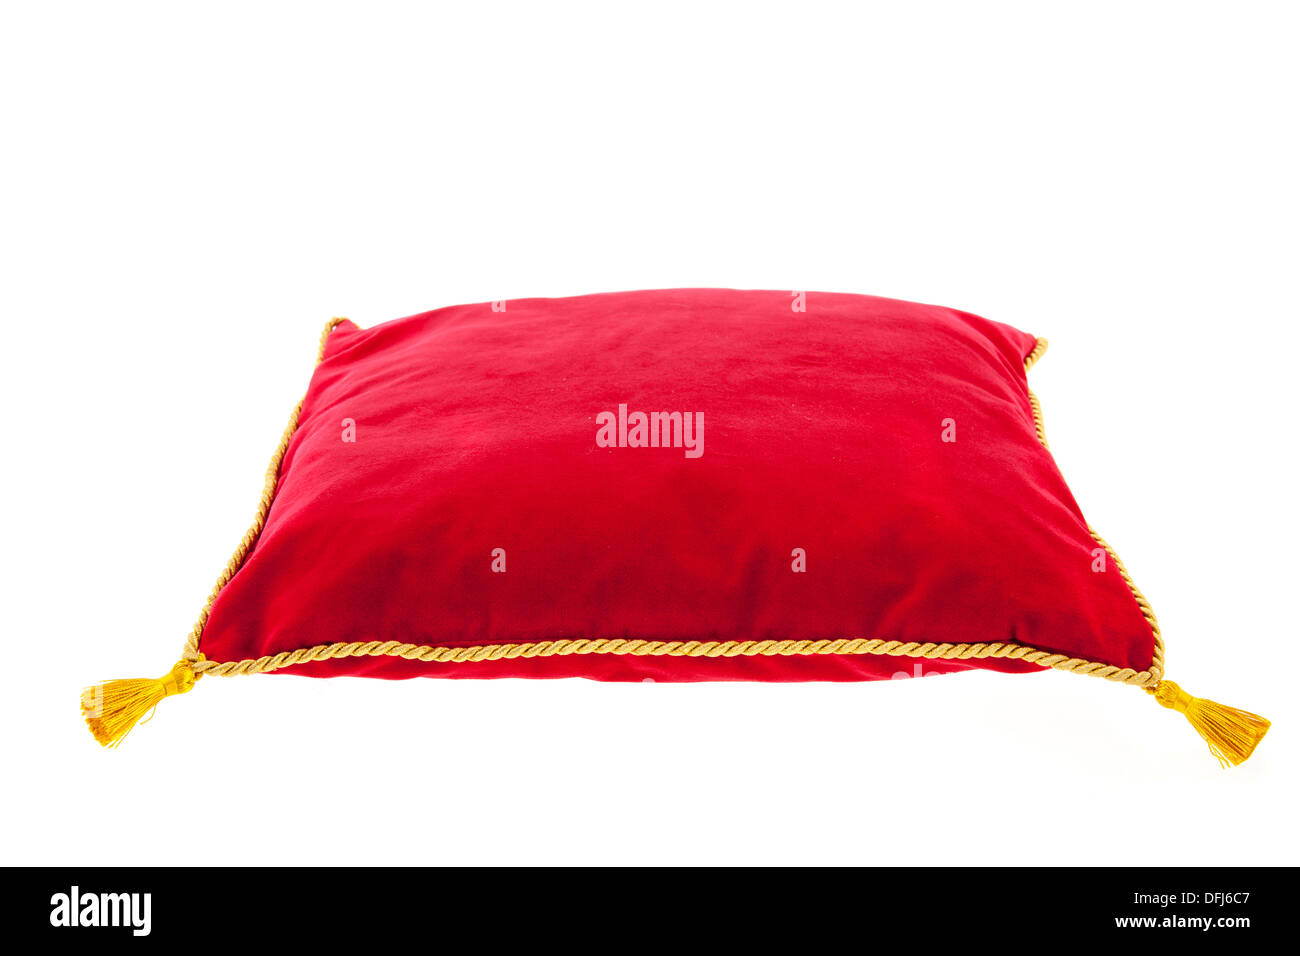 Royal almohada de terciopelo rojo con cuerda de oro aislado sobre fondo blanco. Foto de stock